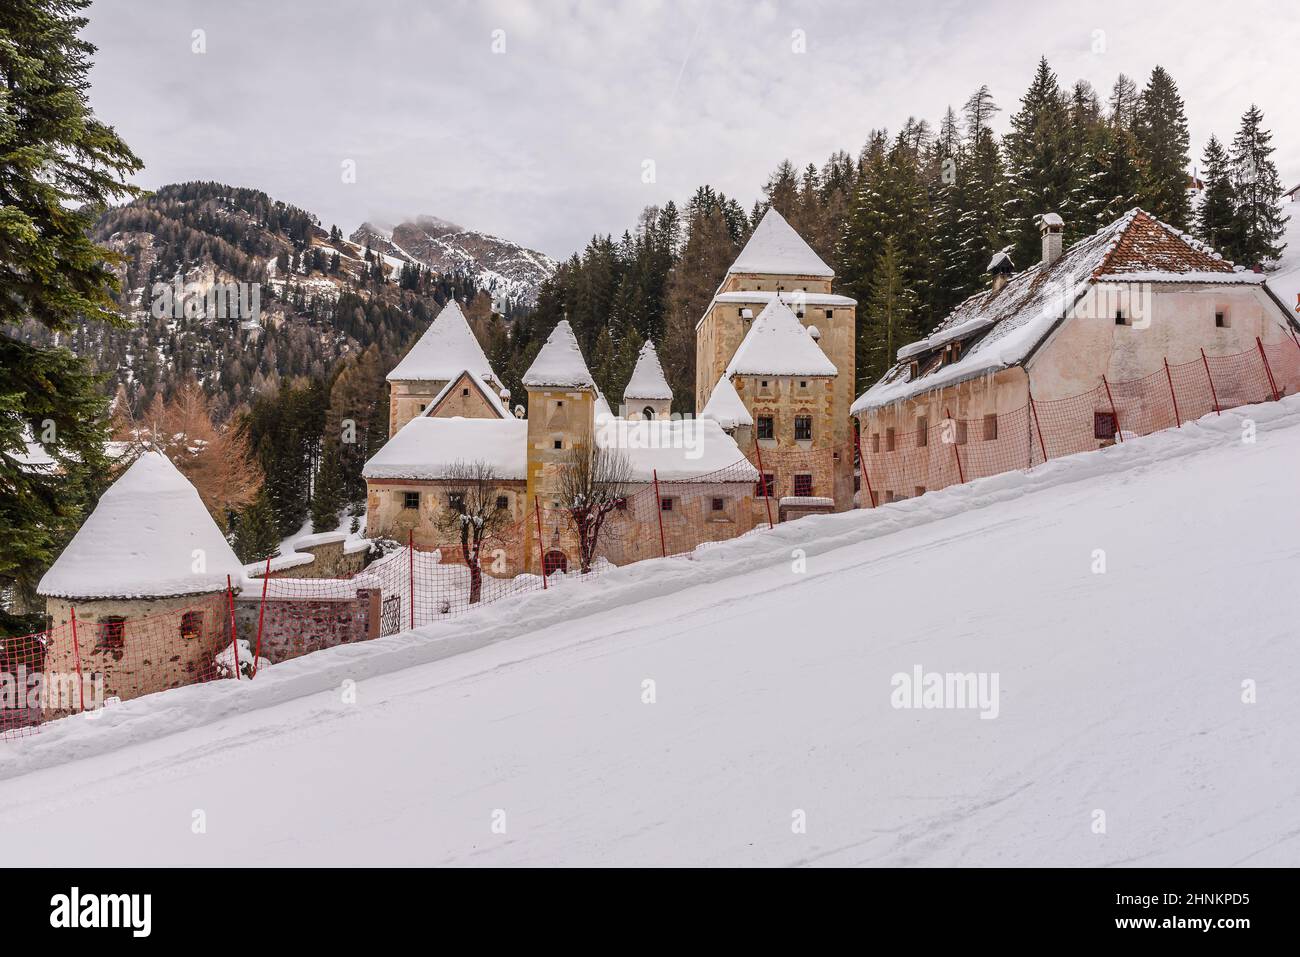 Winter view of Castel Gardena in Santa Cristina Valgardena, alpine village of the Dolomites Stock Photo